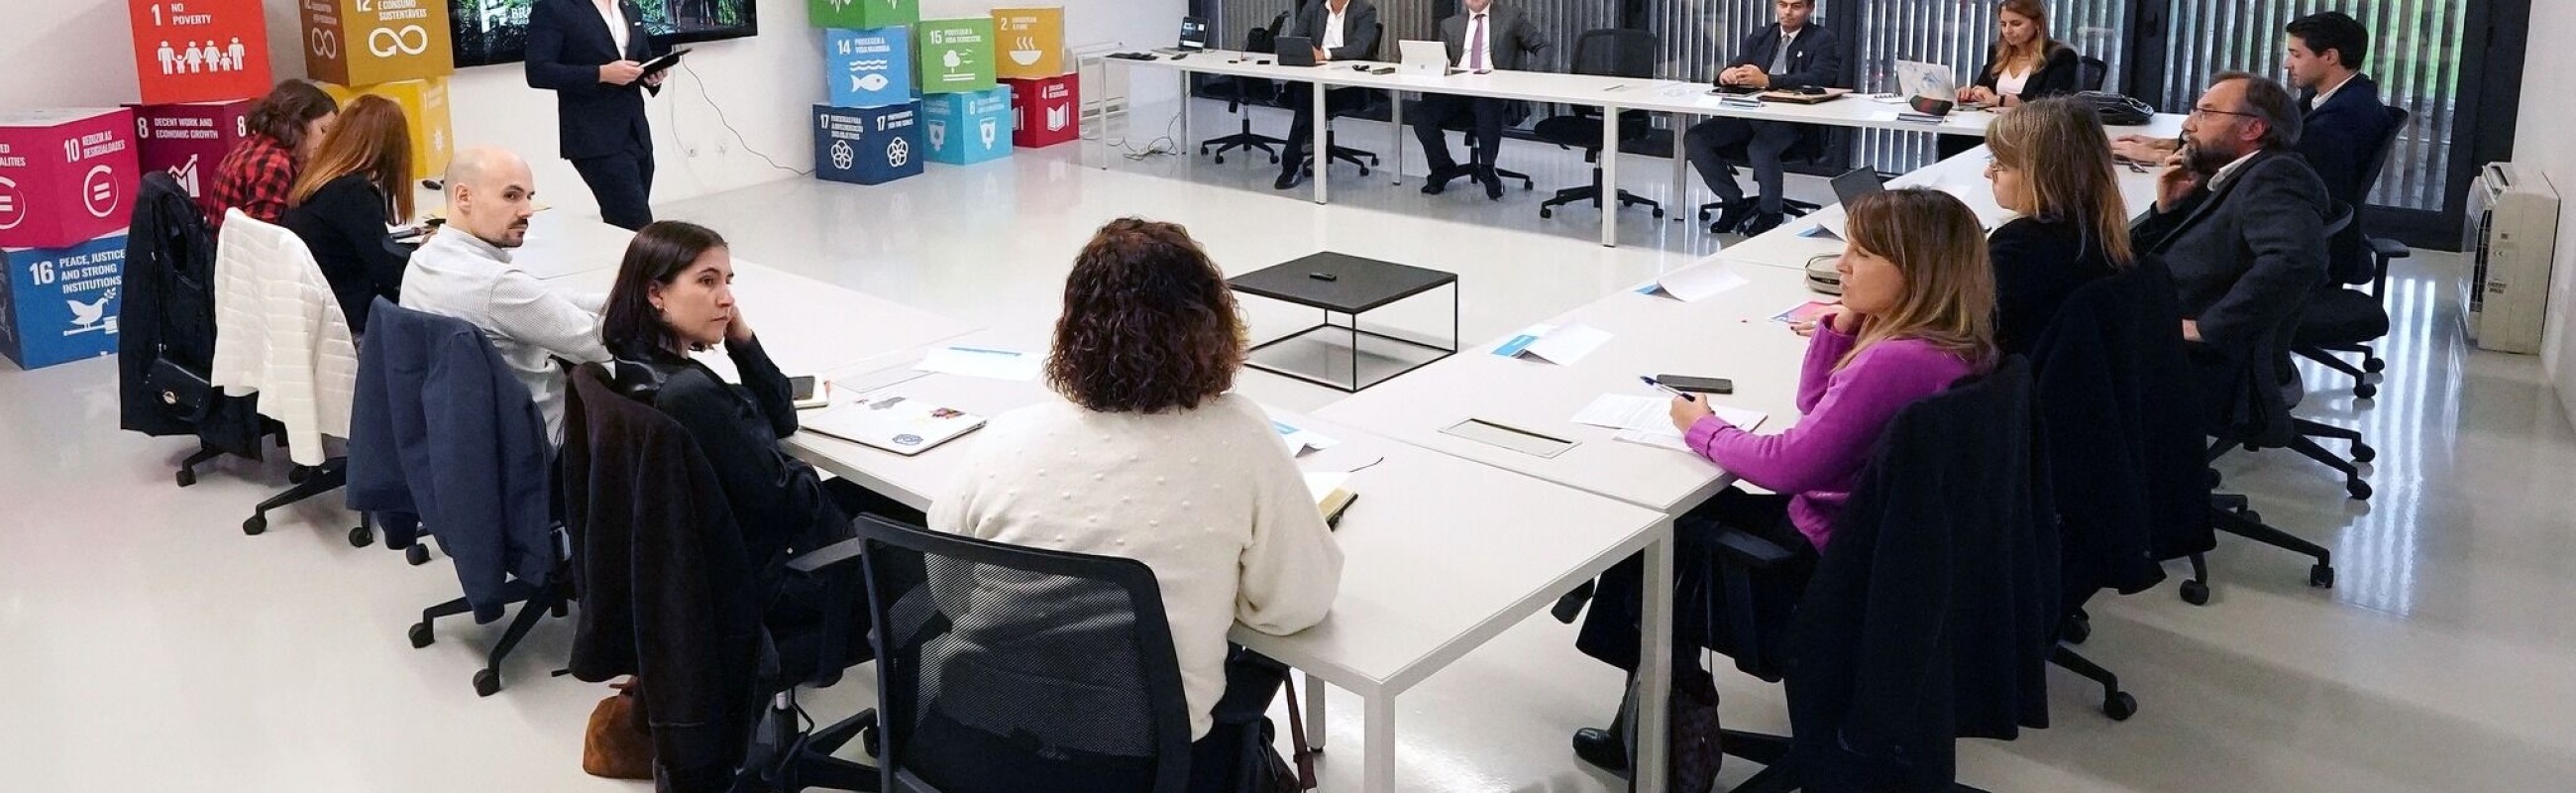 Município de Braga constitui Conselho Estratégico para o Desenvolvimento Sustentável